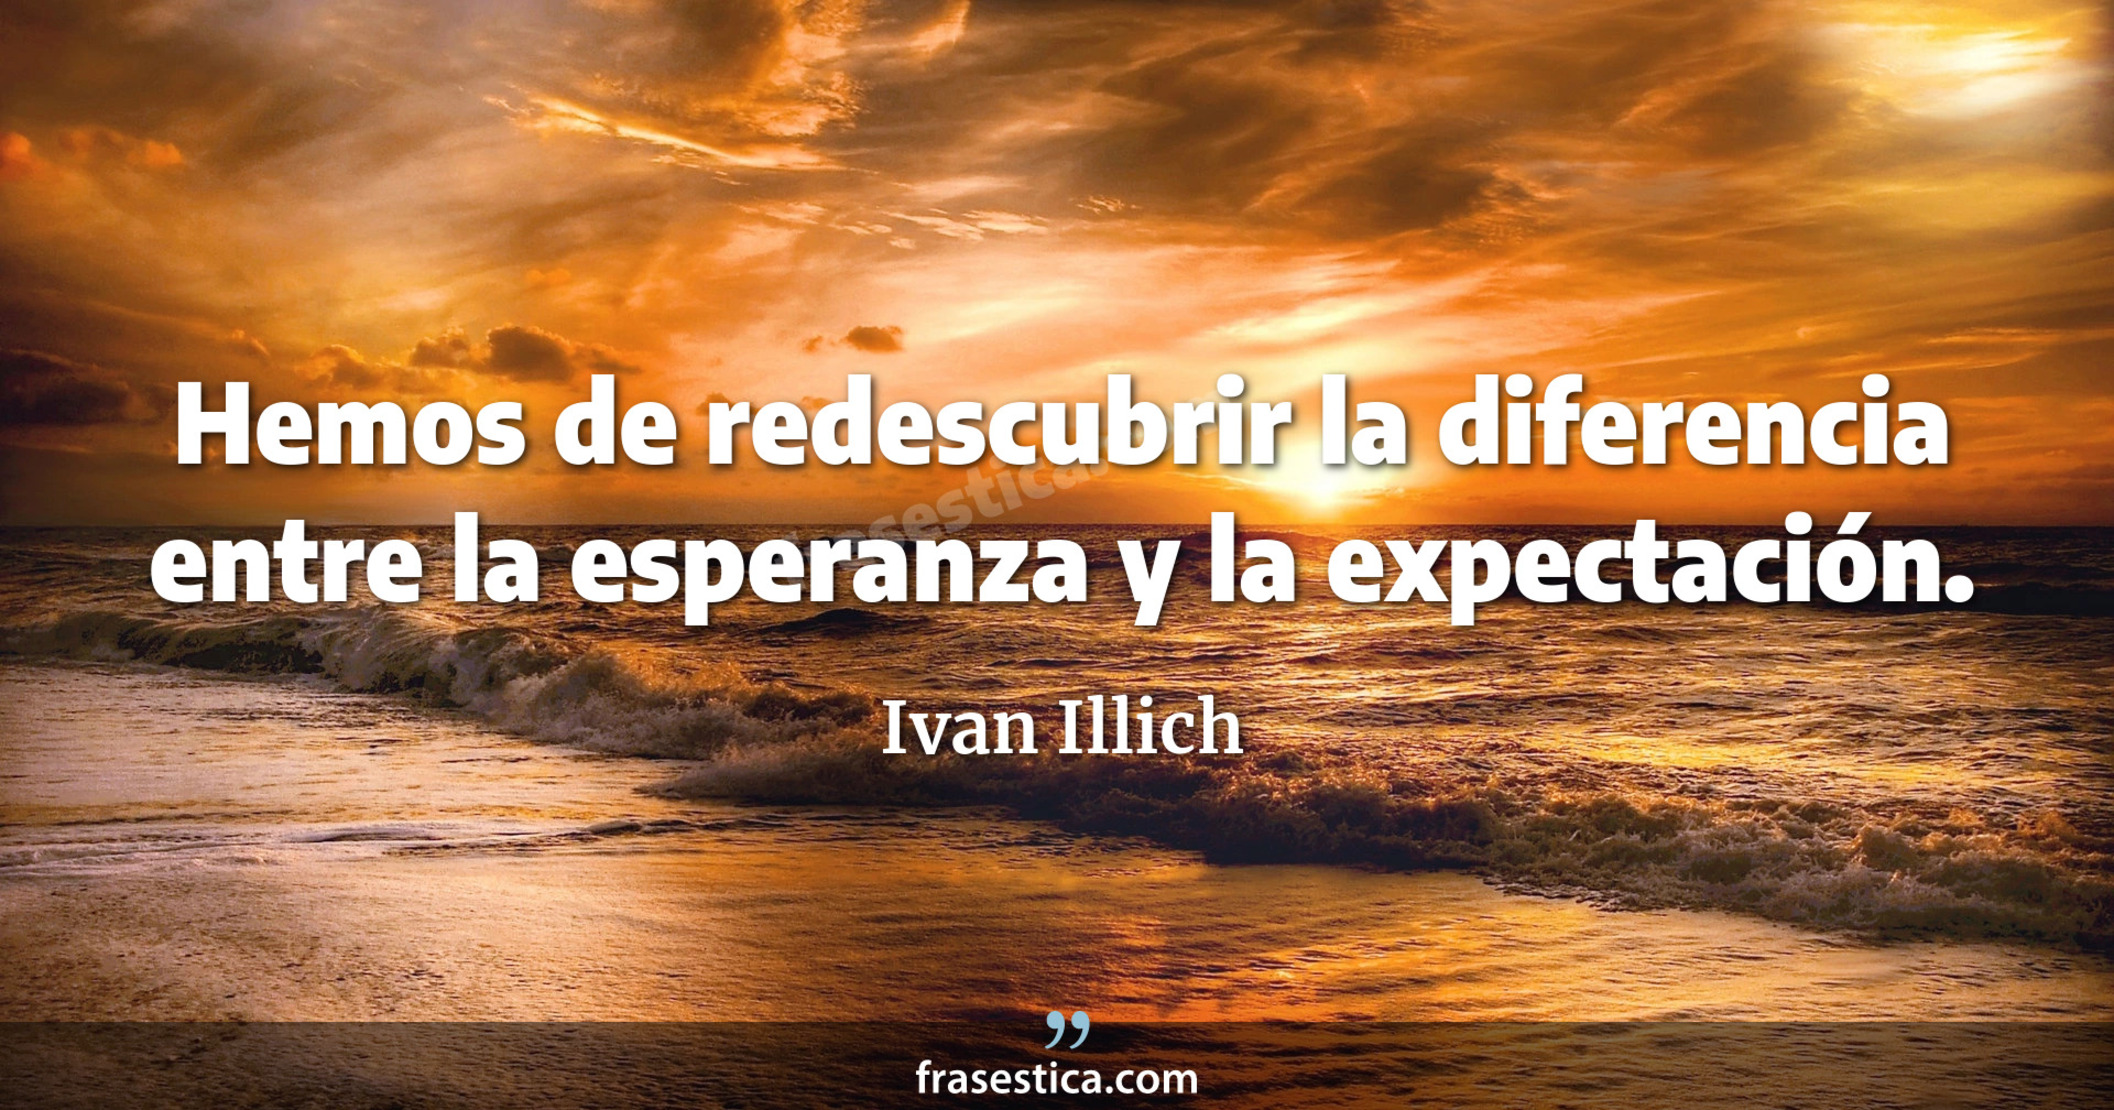 Hemos de redescubrir la diferencia entre la esperanza y la expectación. - Ivan Illich